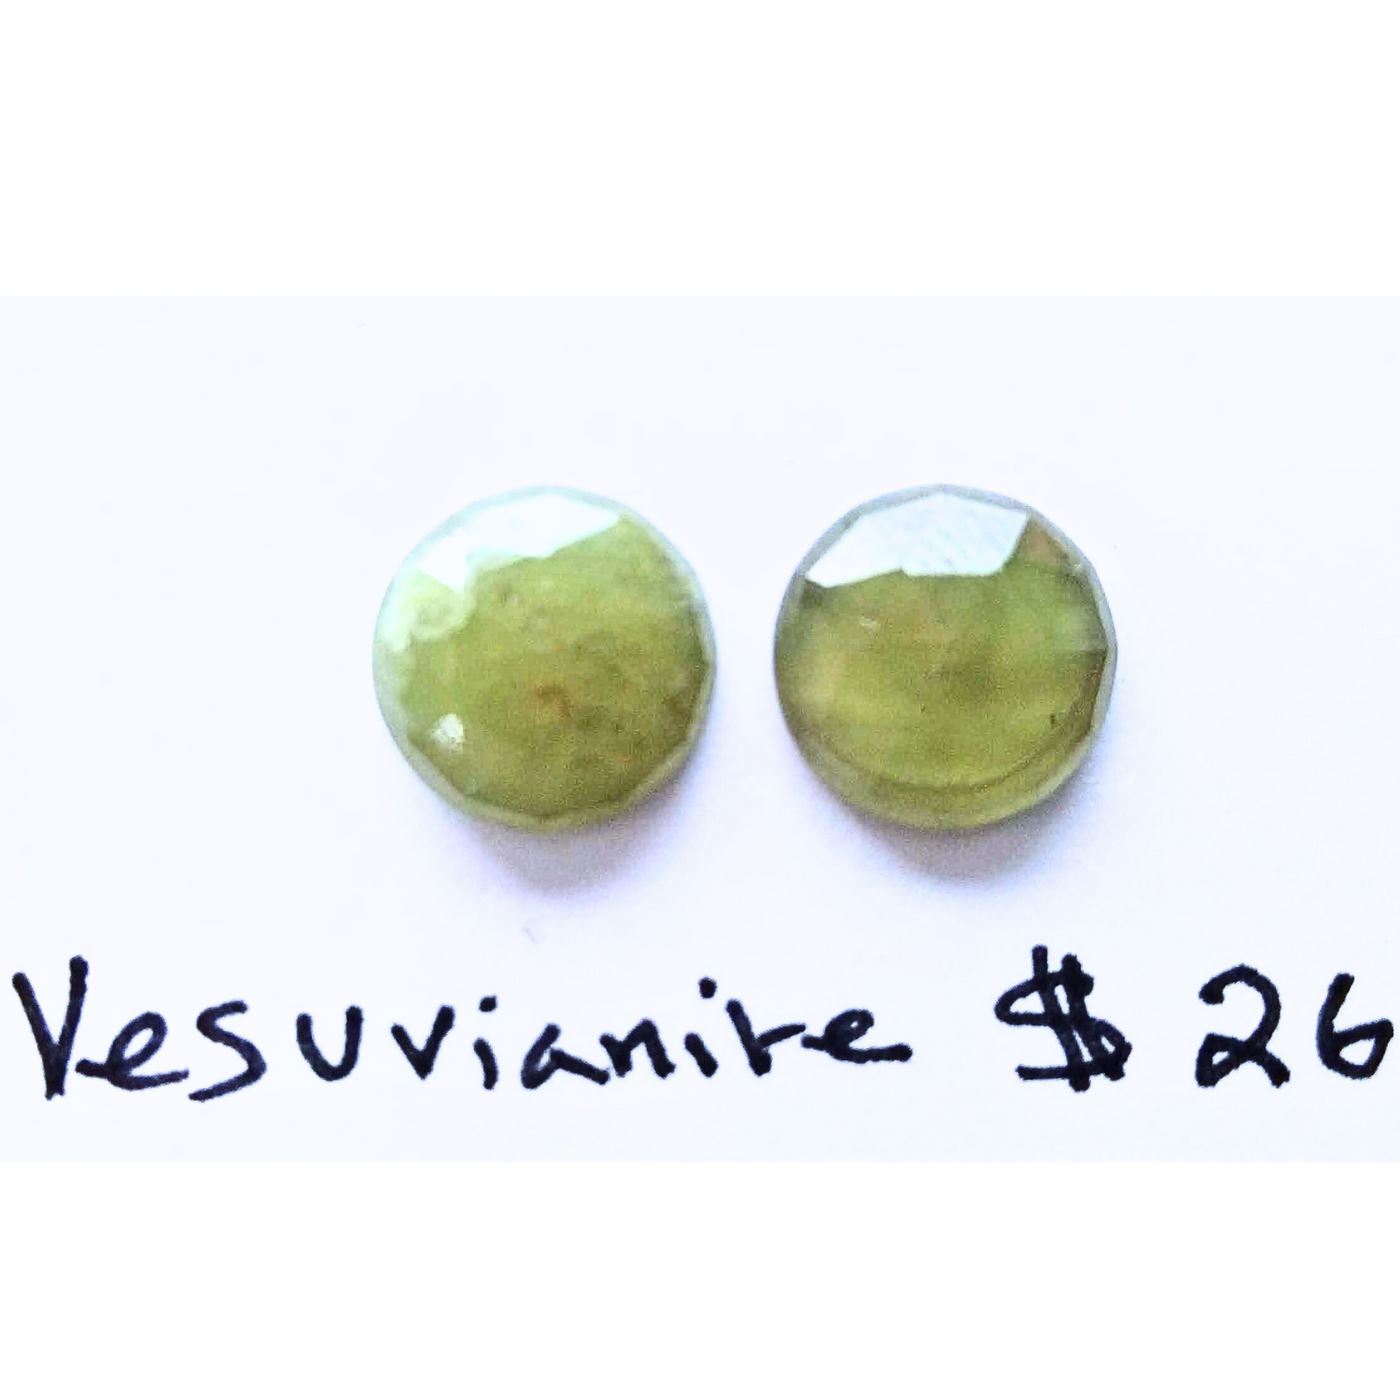 VES-1000 Vesuvianite Rose Cut Pair